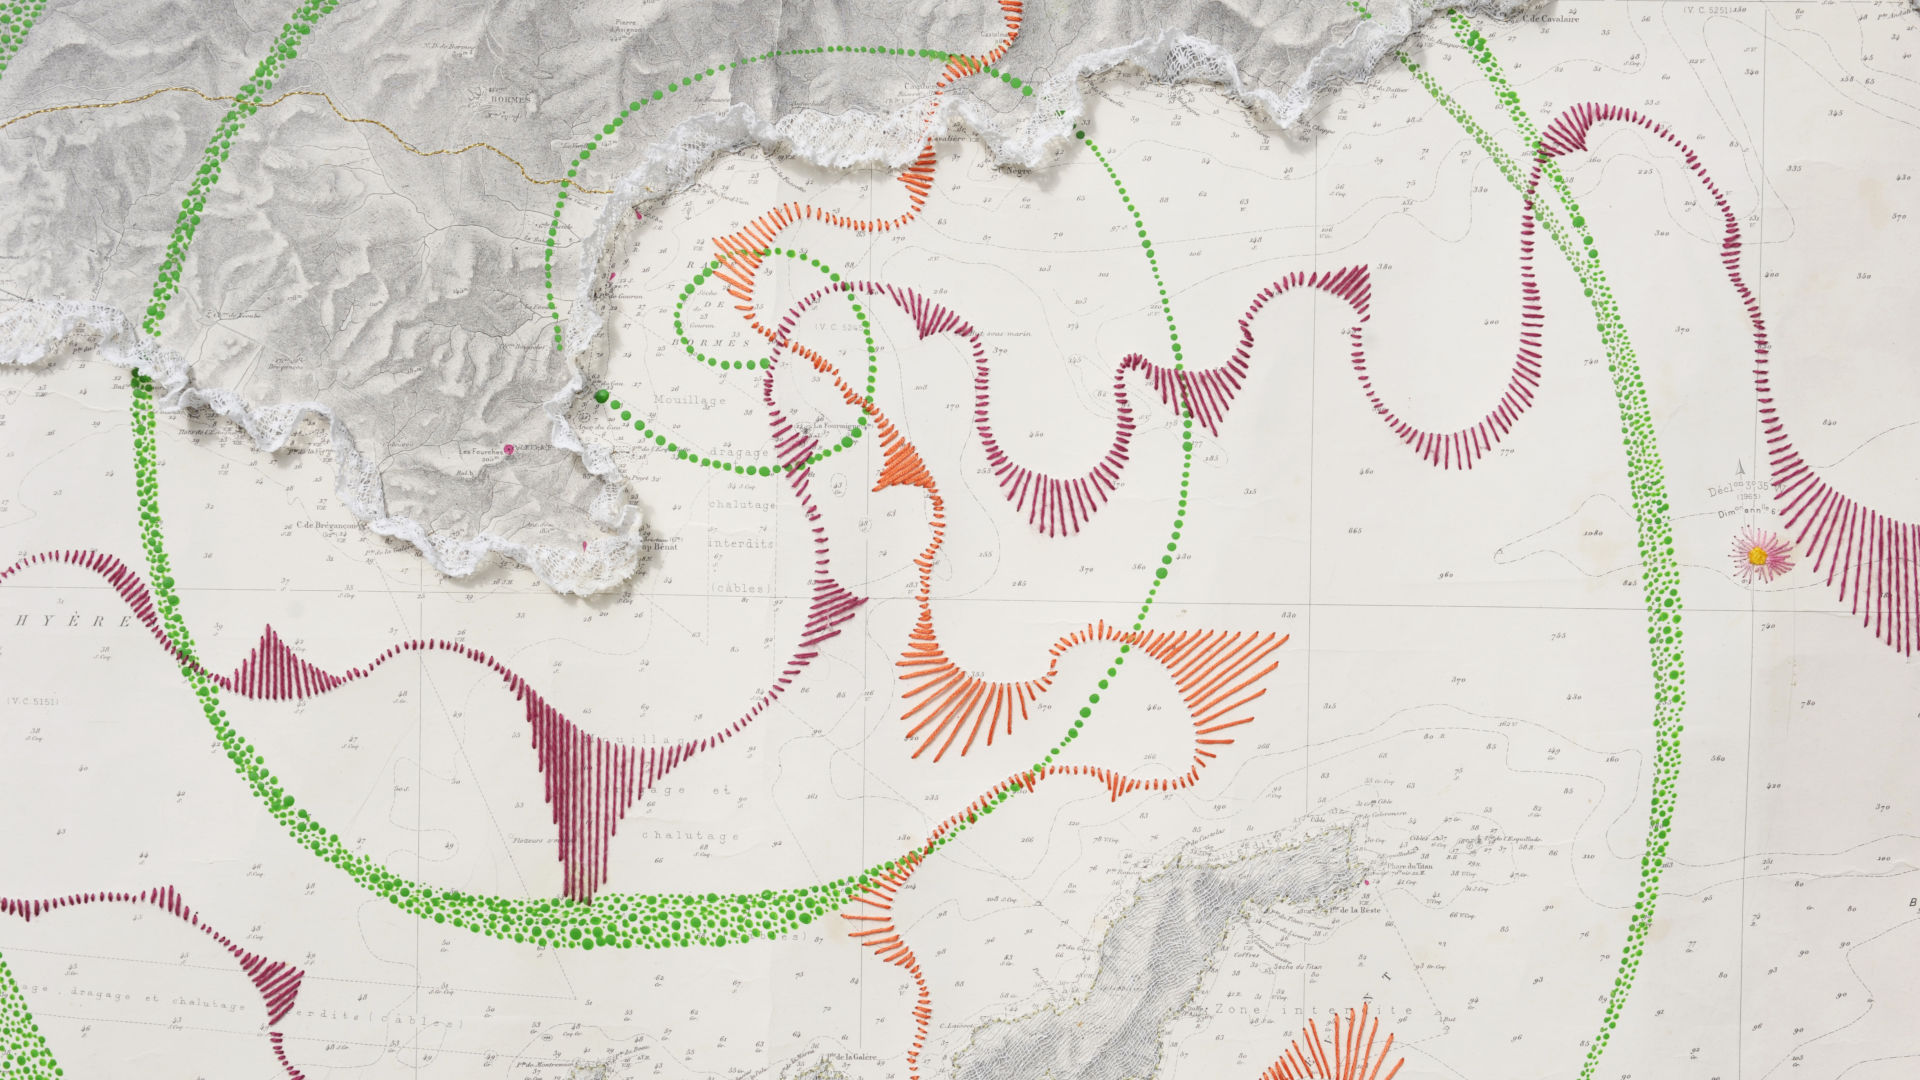 Détail de l'oeuvre, arabesques brodées rose orange et vert sur une carte marine en papier